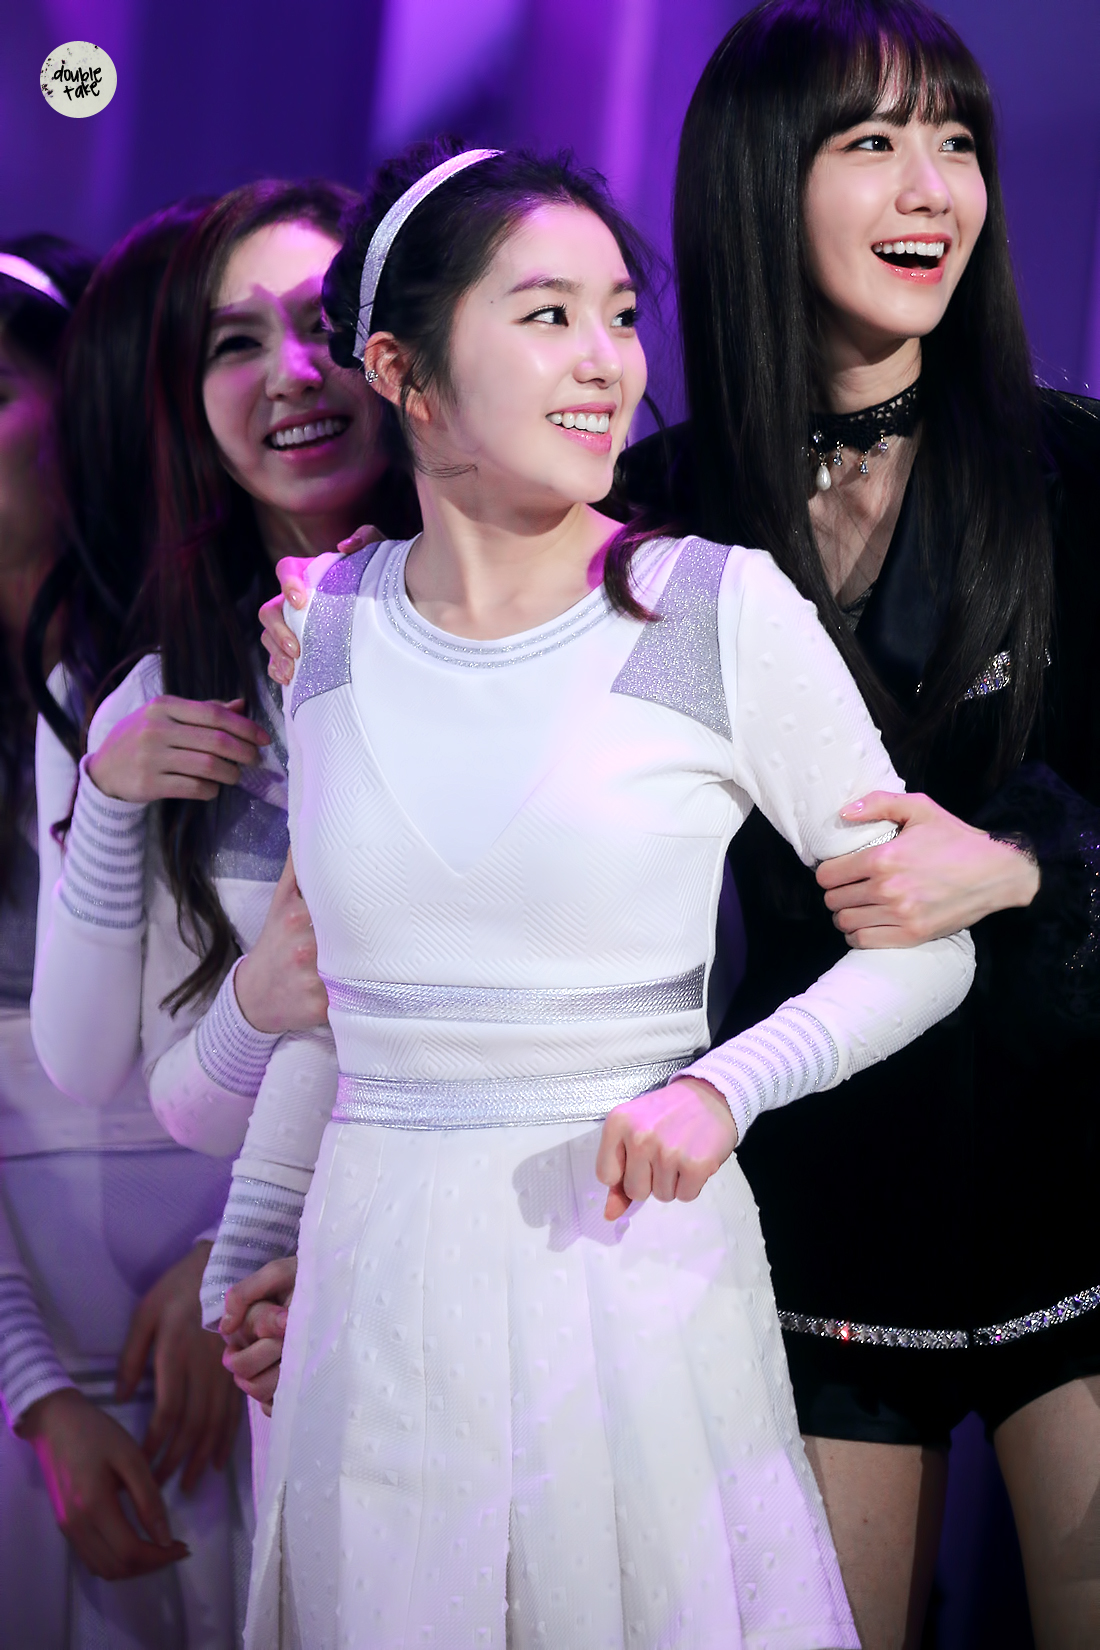 [PIC][31-12-2014]Hình ảnh mới nhất của SNSD từ Đại nhạc hội cuối năm - "2014 MBC Gayo Daejun"  15544503743_ca60527849_o